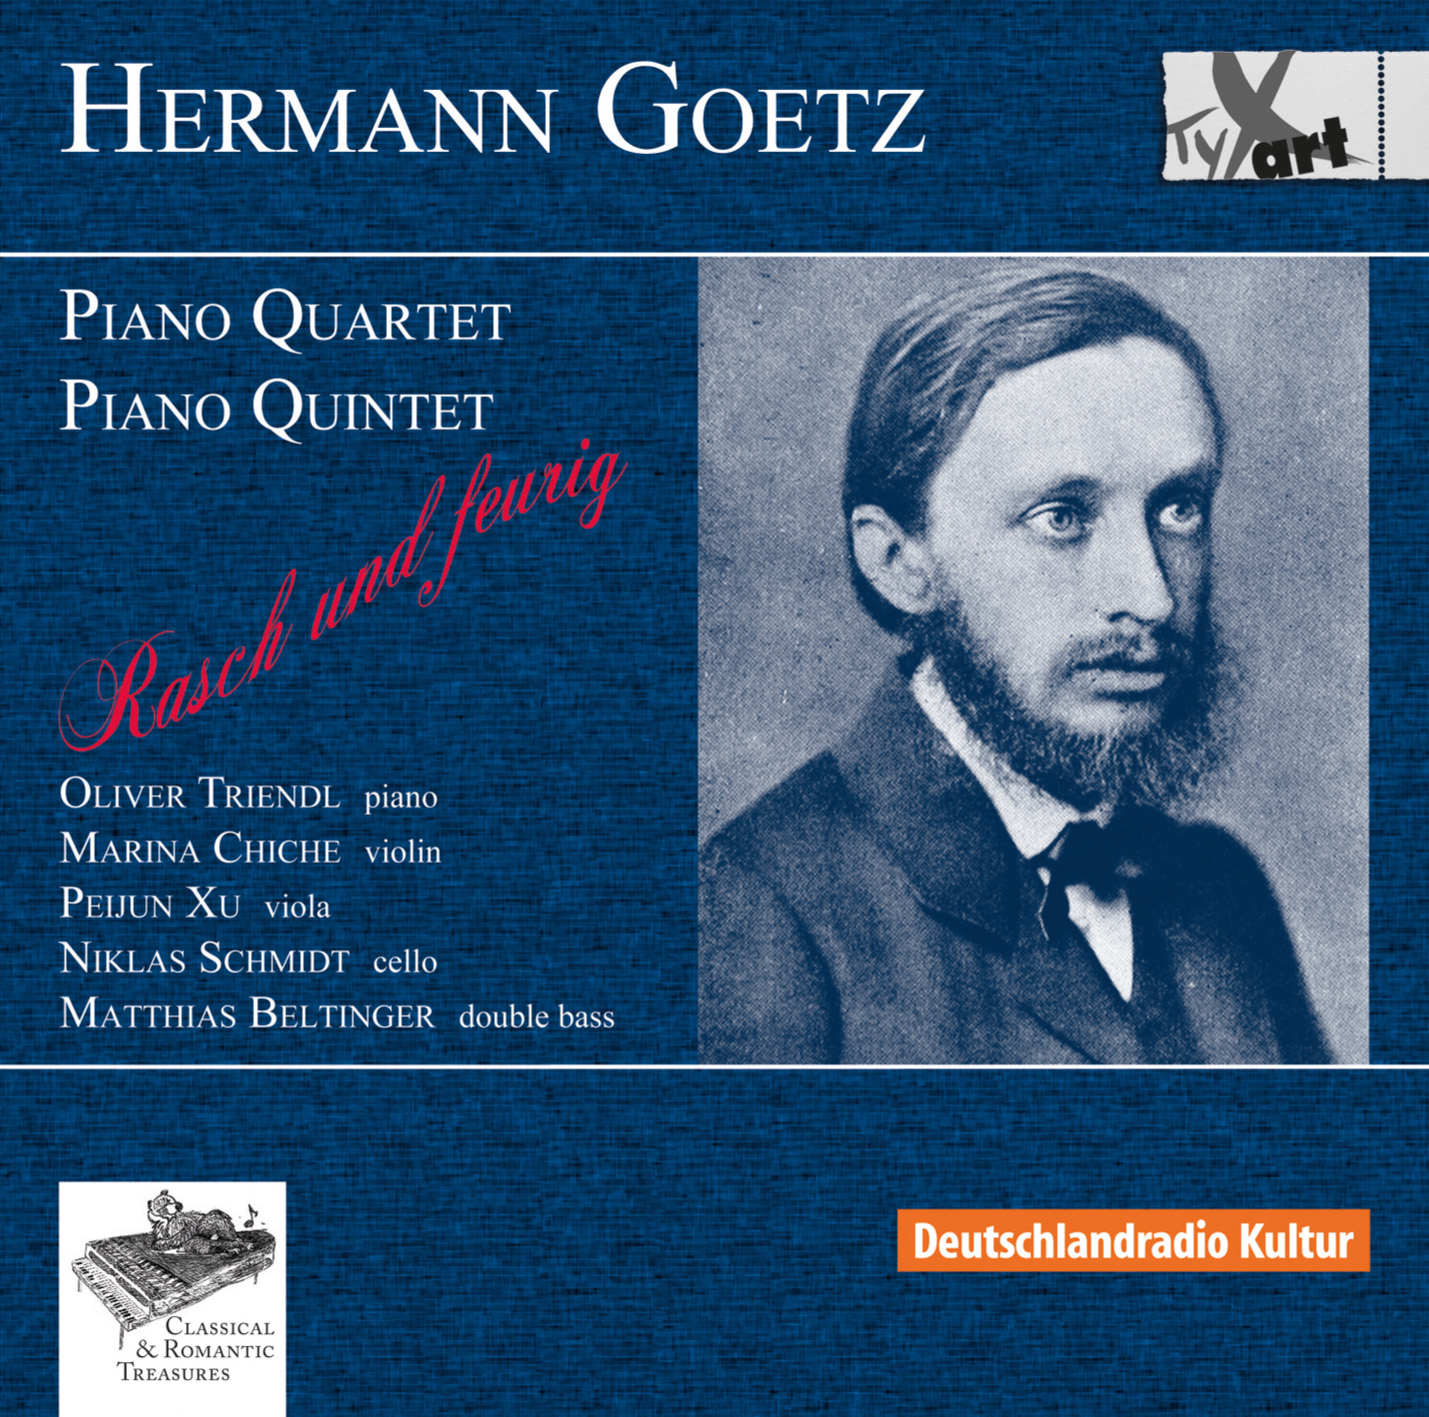 Hermann Goetz: Klavierquartett op.6 und Klavierquintett op.16